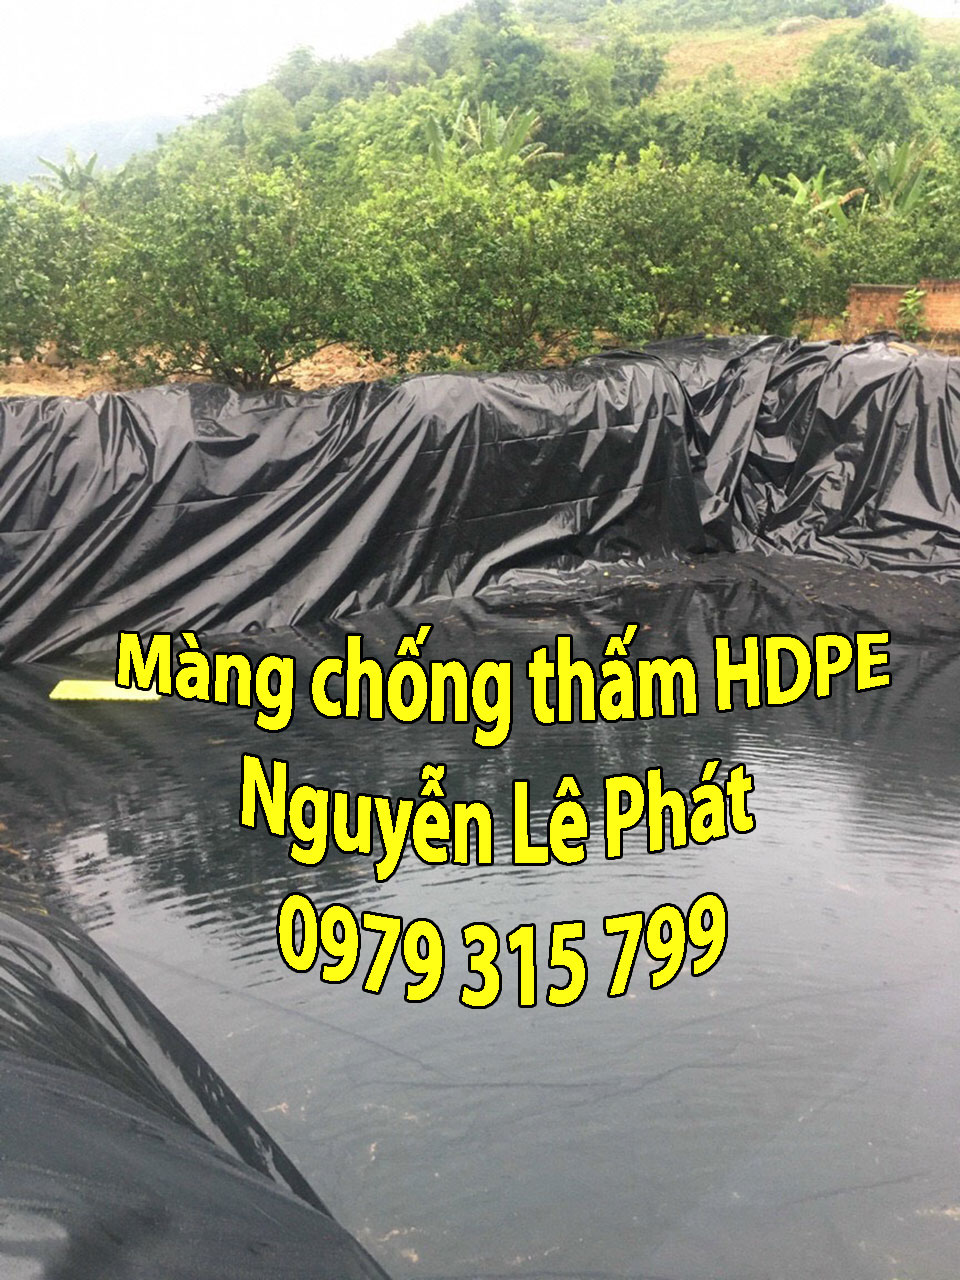 Màng chống thấm HDPE có tên tiếng anh là high-density polyethylene (HDPE)